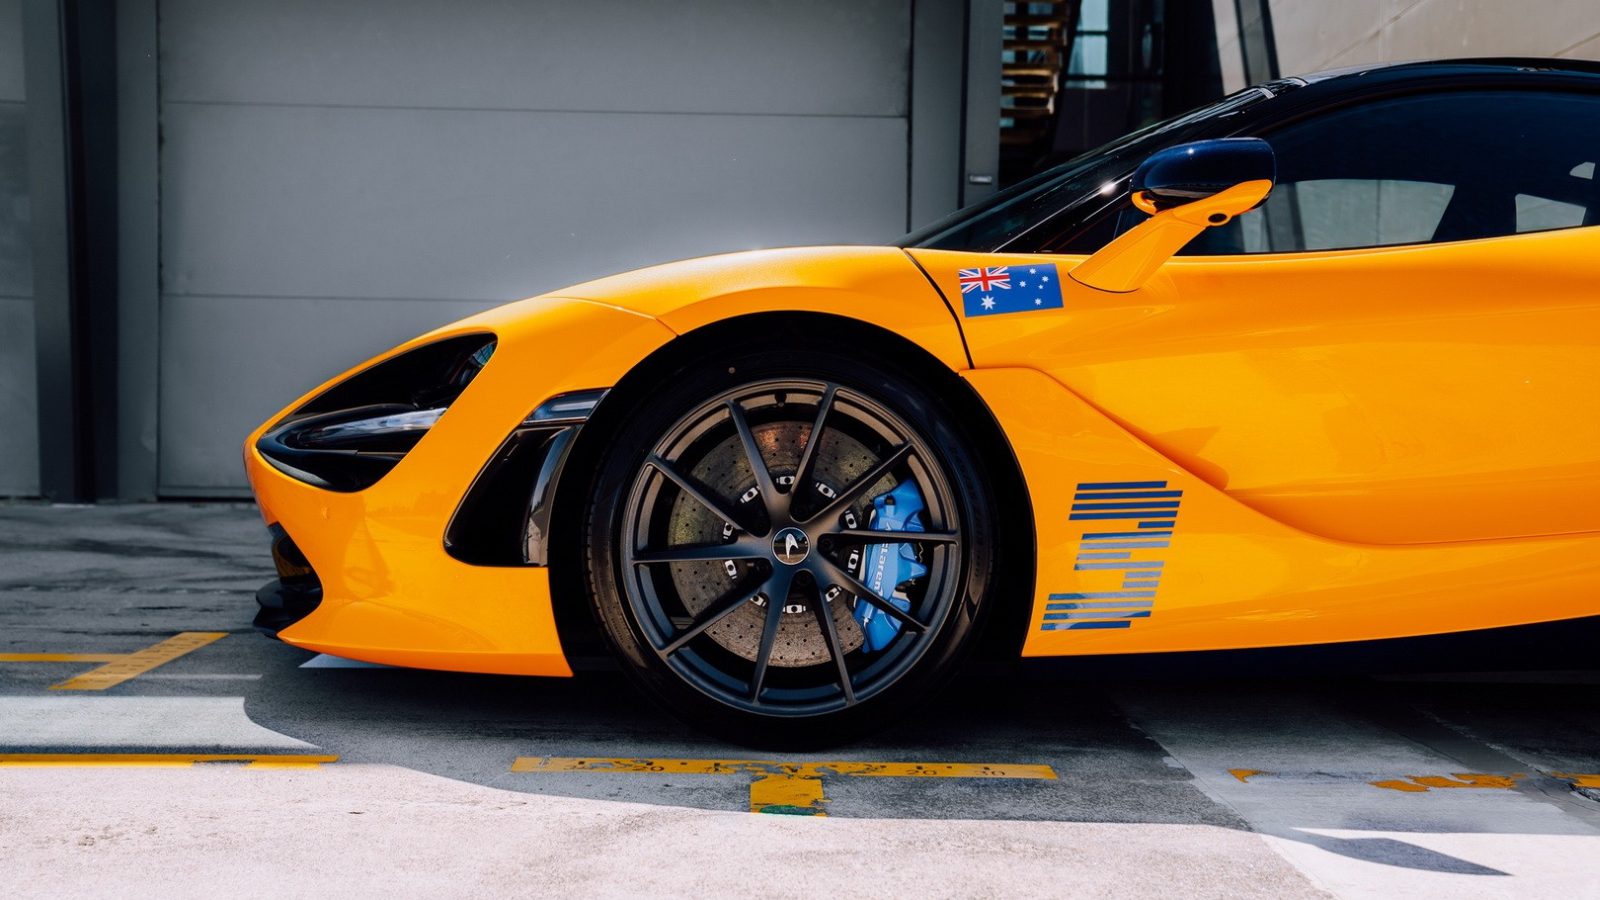 Close-up zijaanzicht van een gele sportwagen geparkeerd voor een gebouw, met een sticker van de Australische vlag op de zijkant. De afbeelding benadrukt het voorwiel en de strakke designkenmerken van de auto, die doen denken aan de gedurfde racestijl van Daniel Ricciardo.